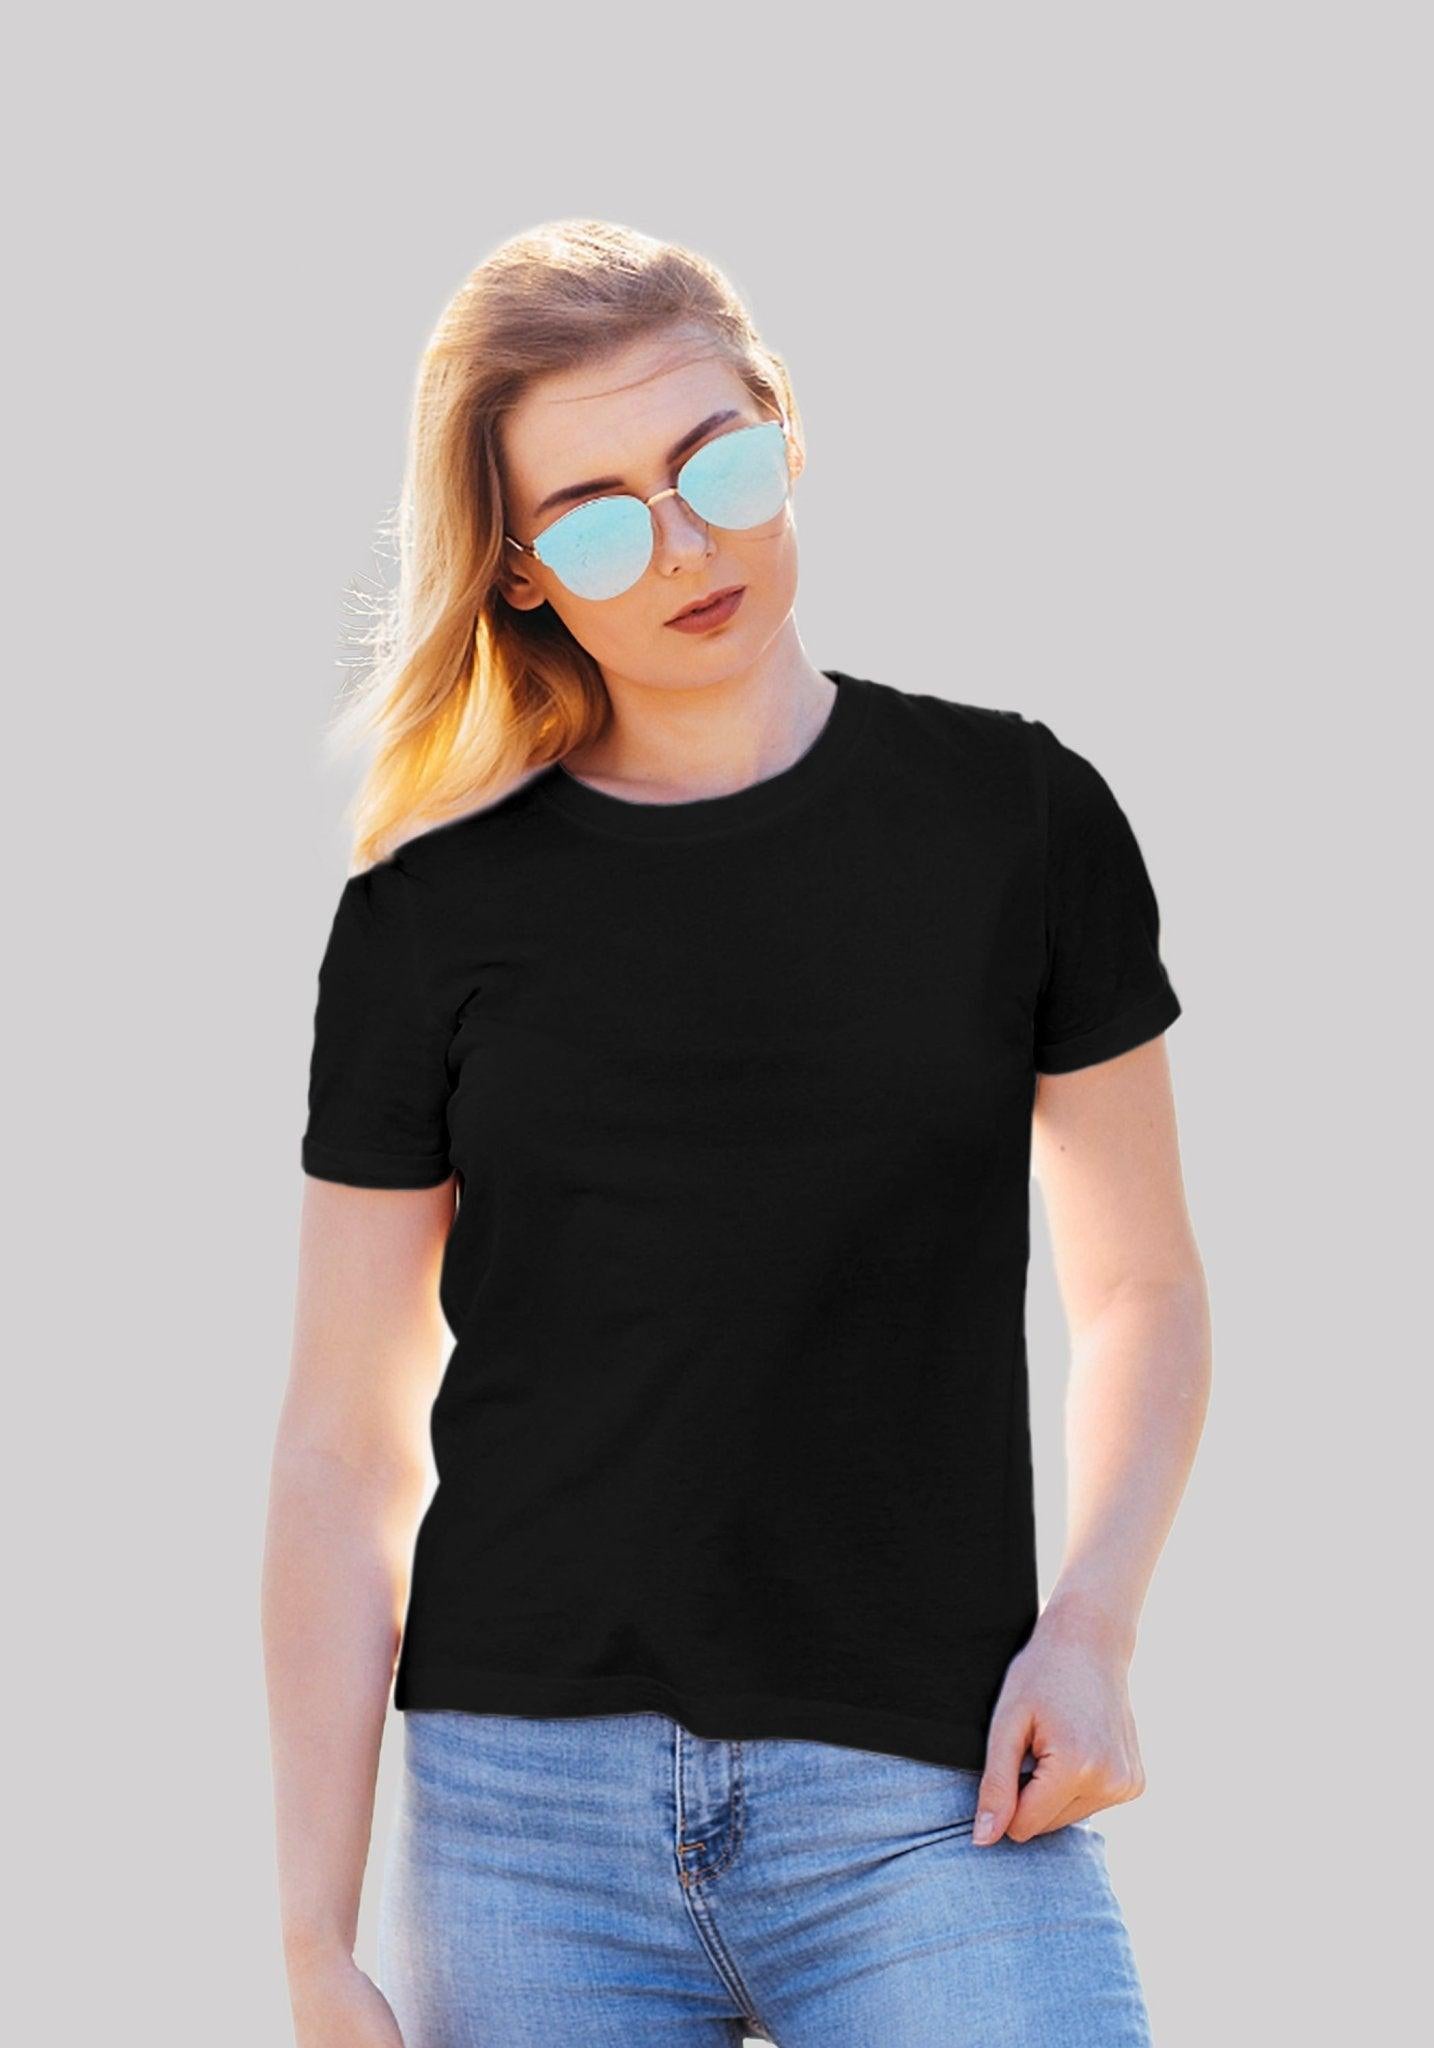 Women's Plain Solid t shirt black color - Hangout Hub